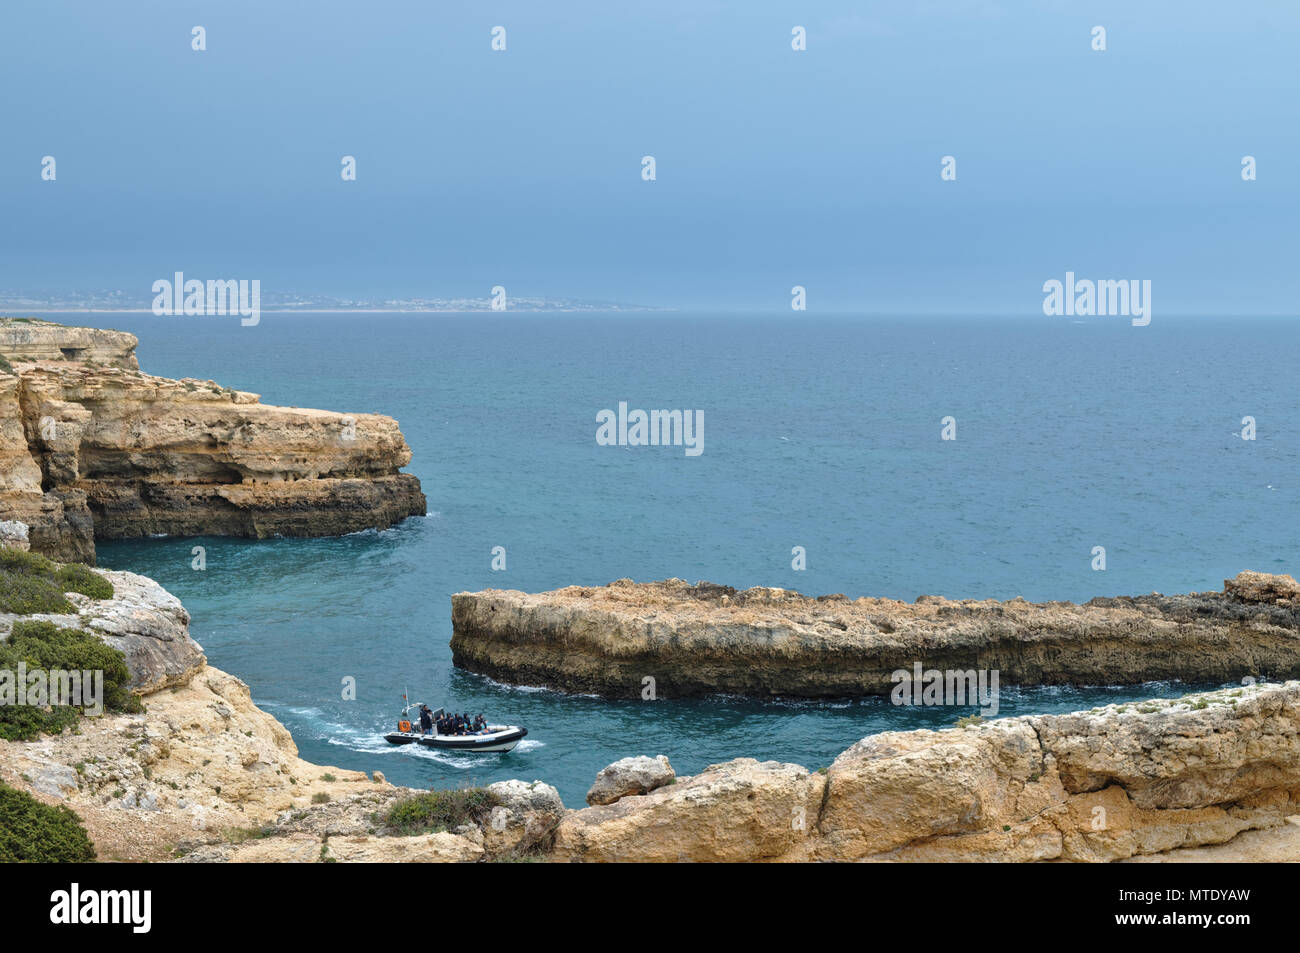 Boat cave tours along the coast of Lagoa, Algarve, Portugal Stock Photo